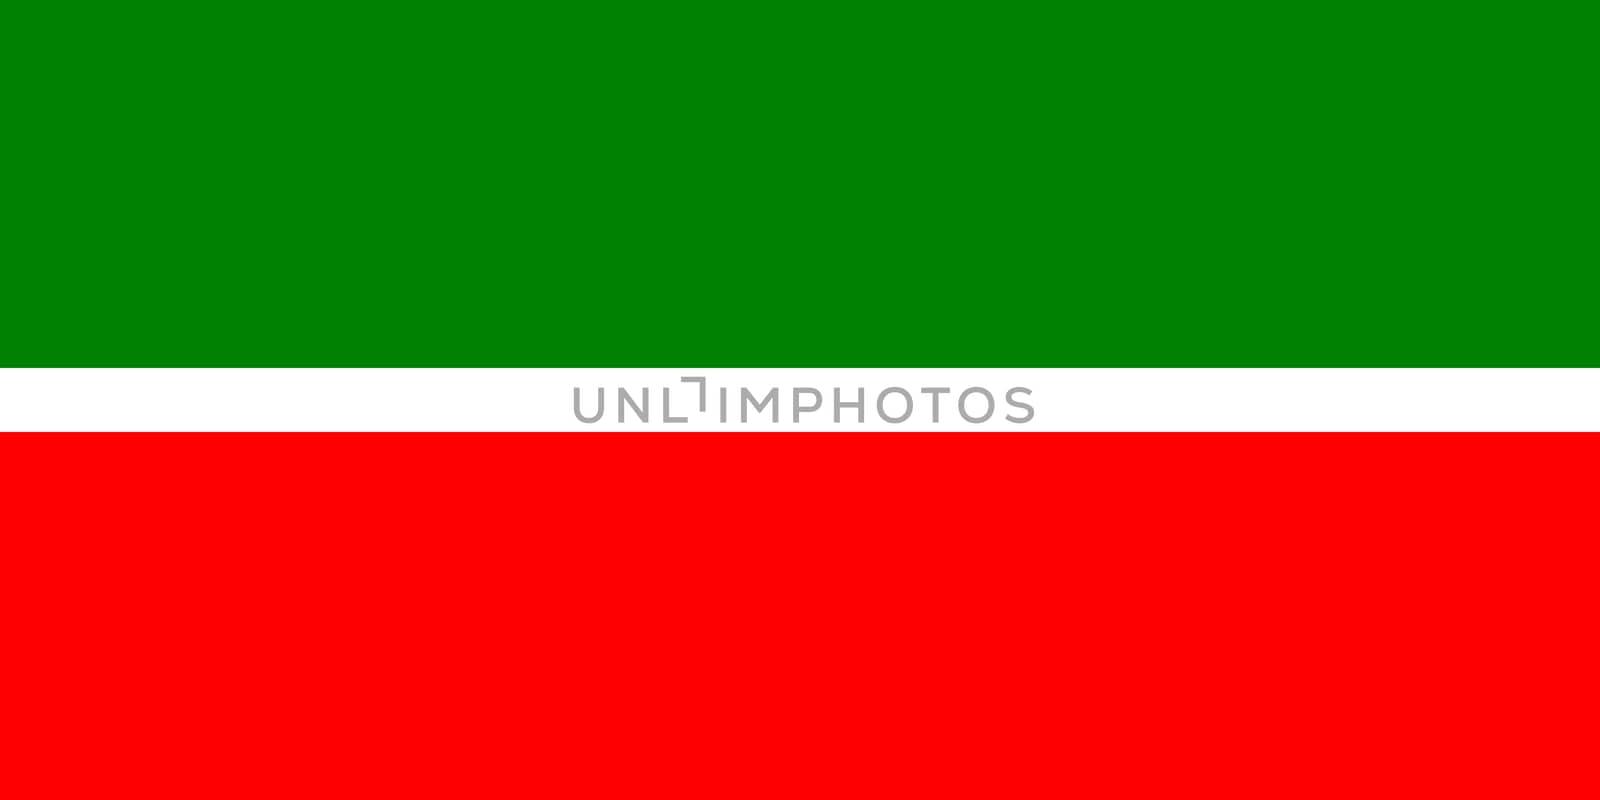 tatarstan flag by tony4urban